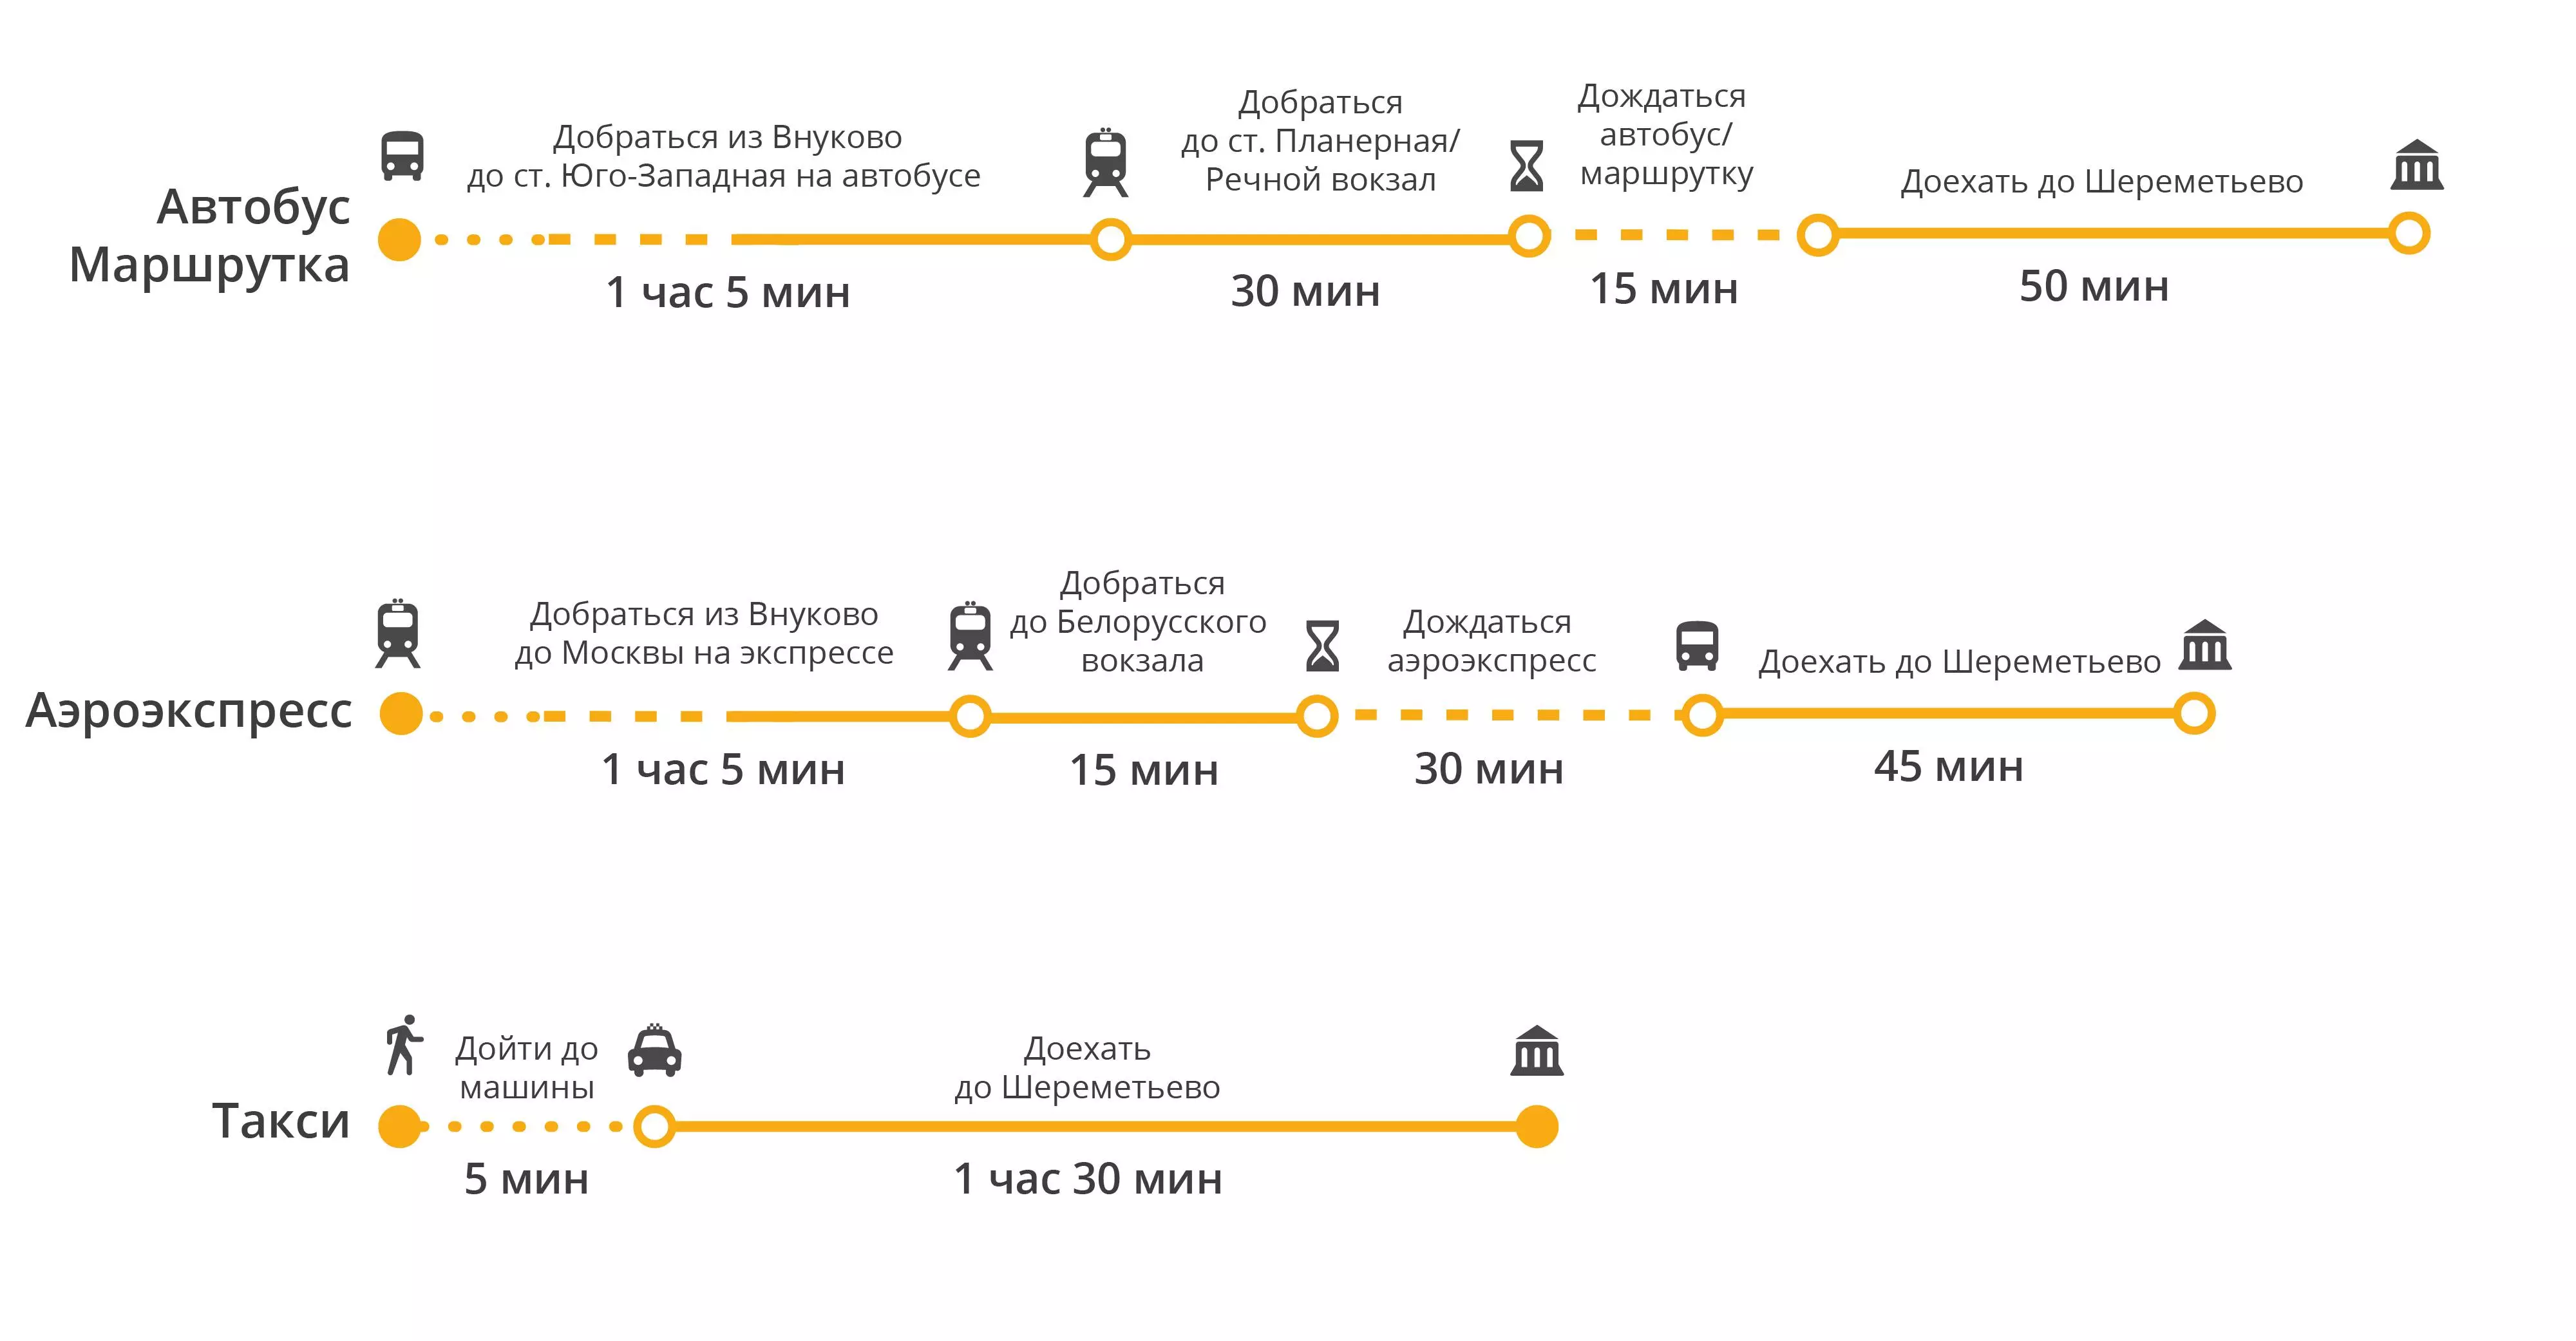 Как добраться из домодедово в москву: аэроэкспресс, автобус, метро, такси. расстояние, цены на билеты и расписание 2022 на туристер.ру